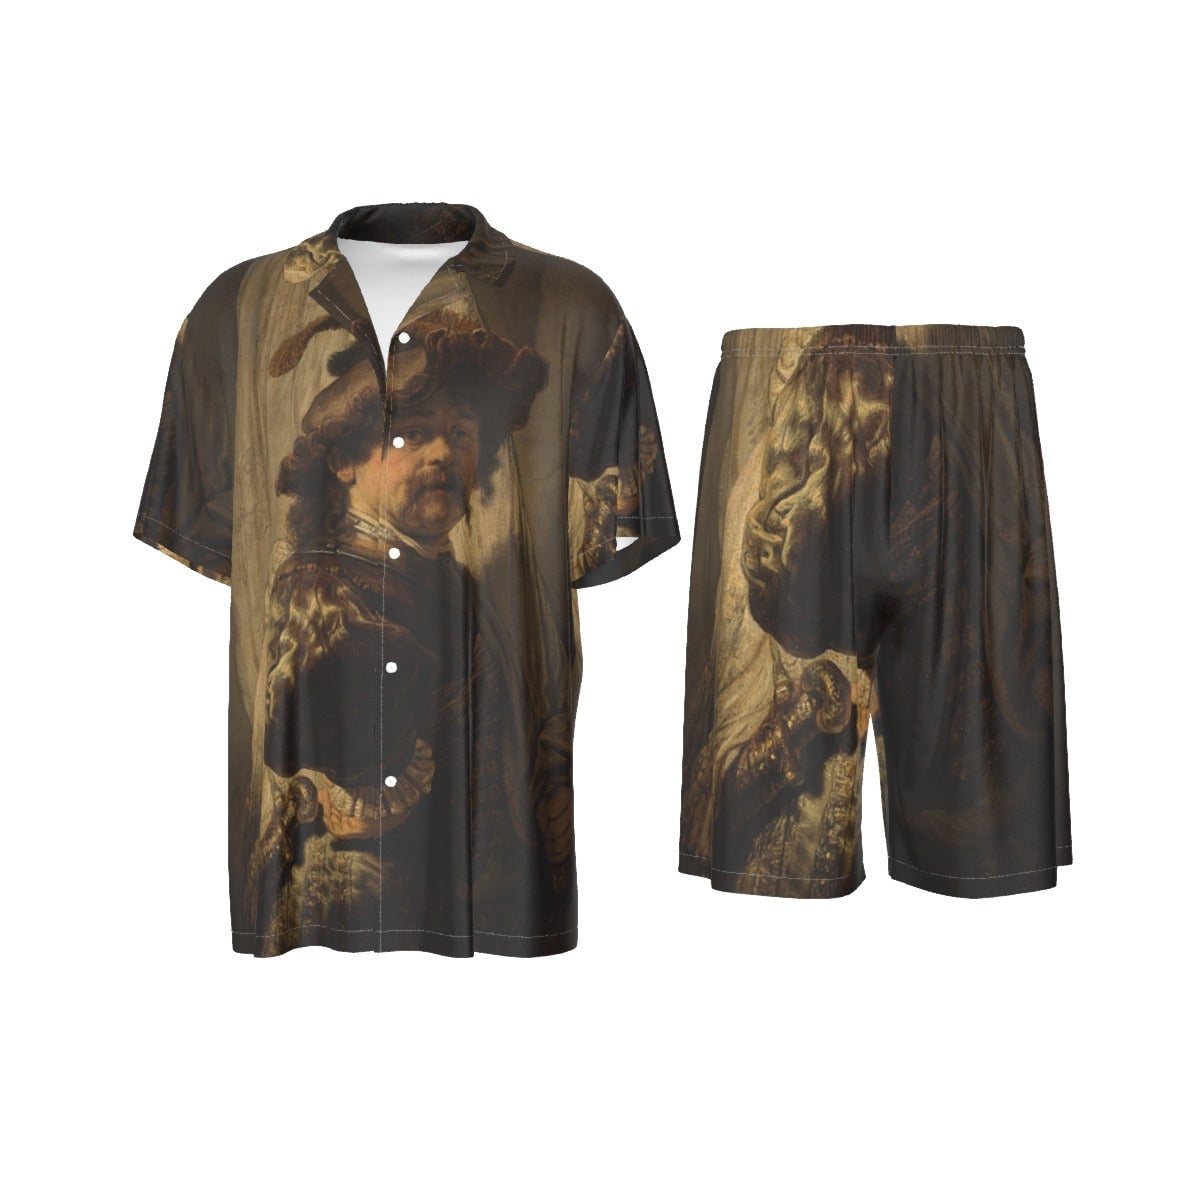 The Standard Bearer by Rembrandt Art Silk Shirt Suit Set